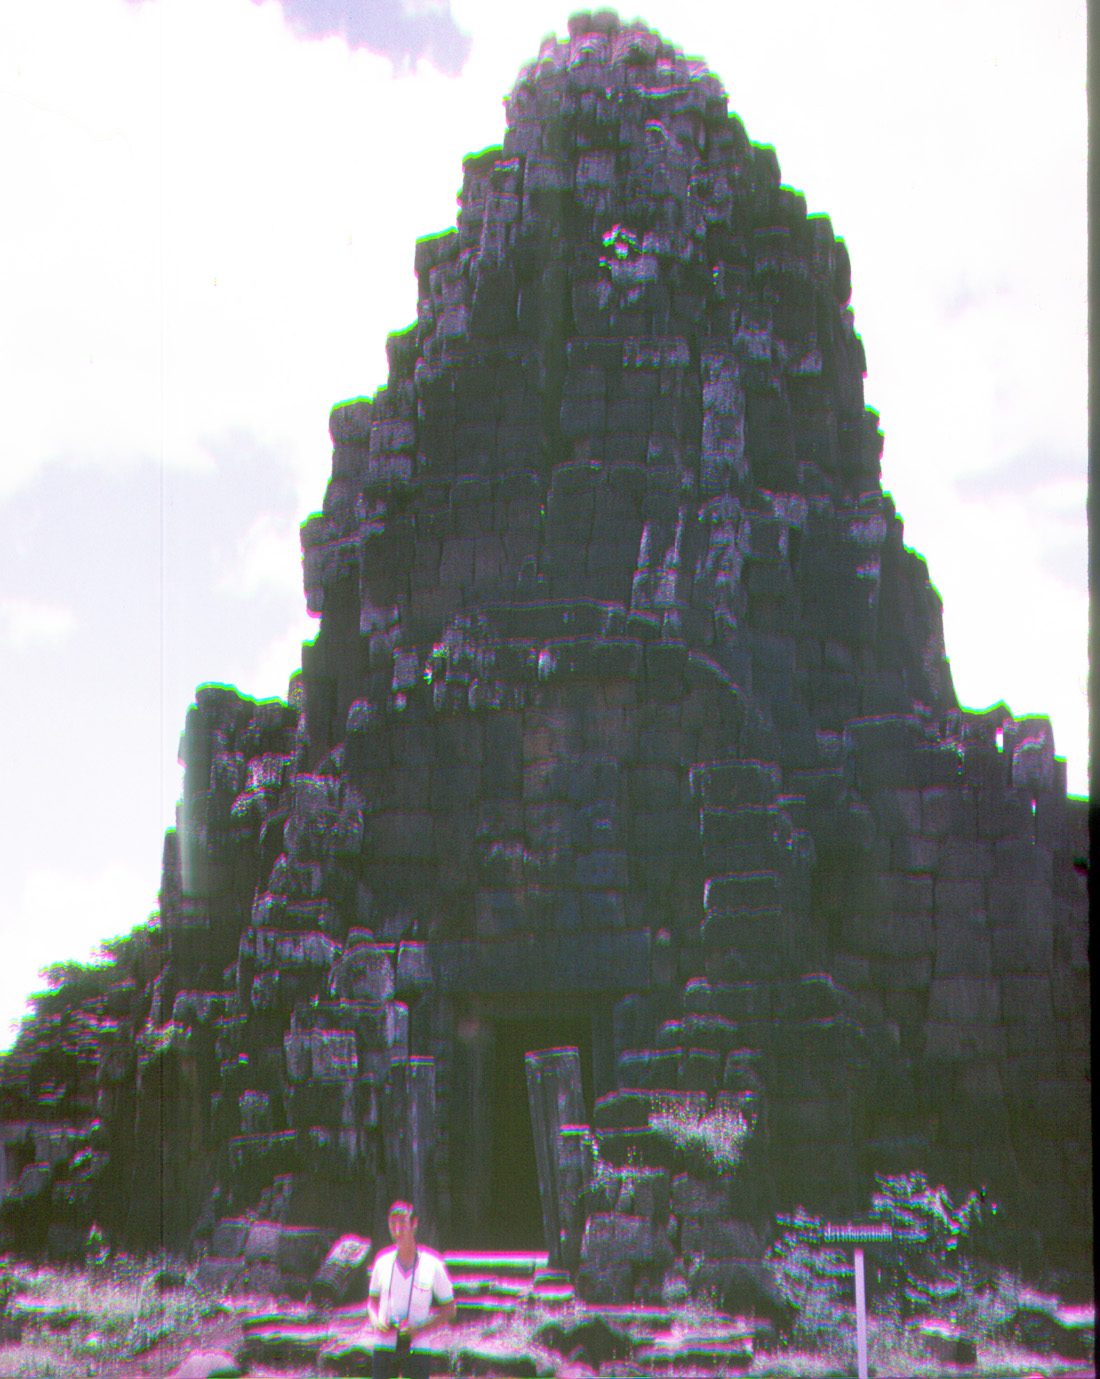 Phi Mai ruins 1969